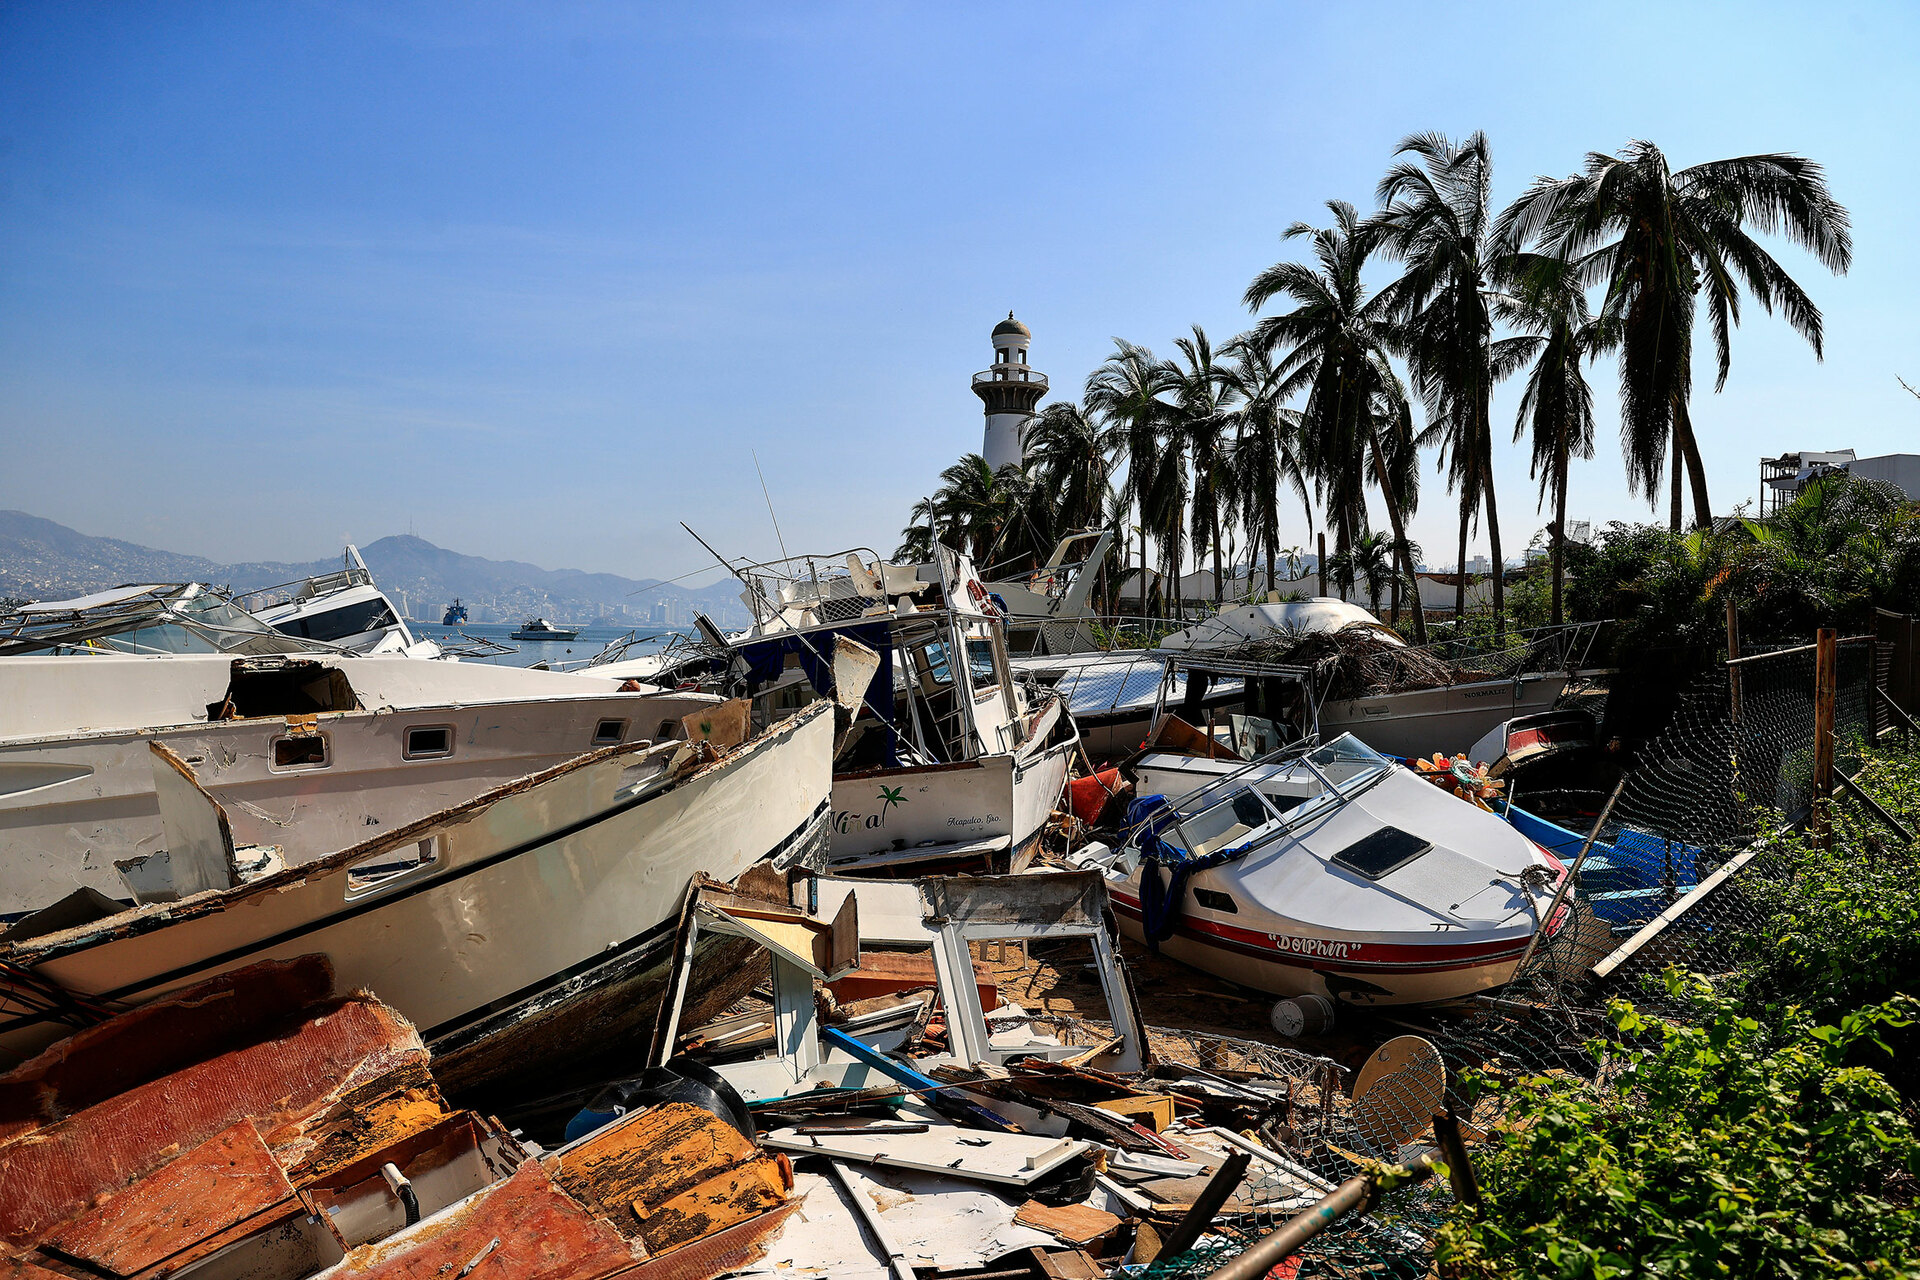 Emergencia Acapulco: Otis y la crónica de un desastre no esperado